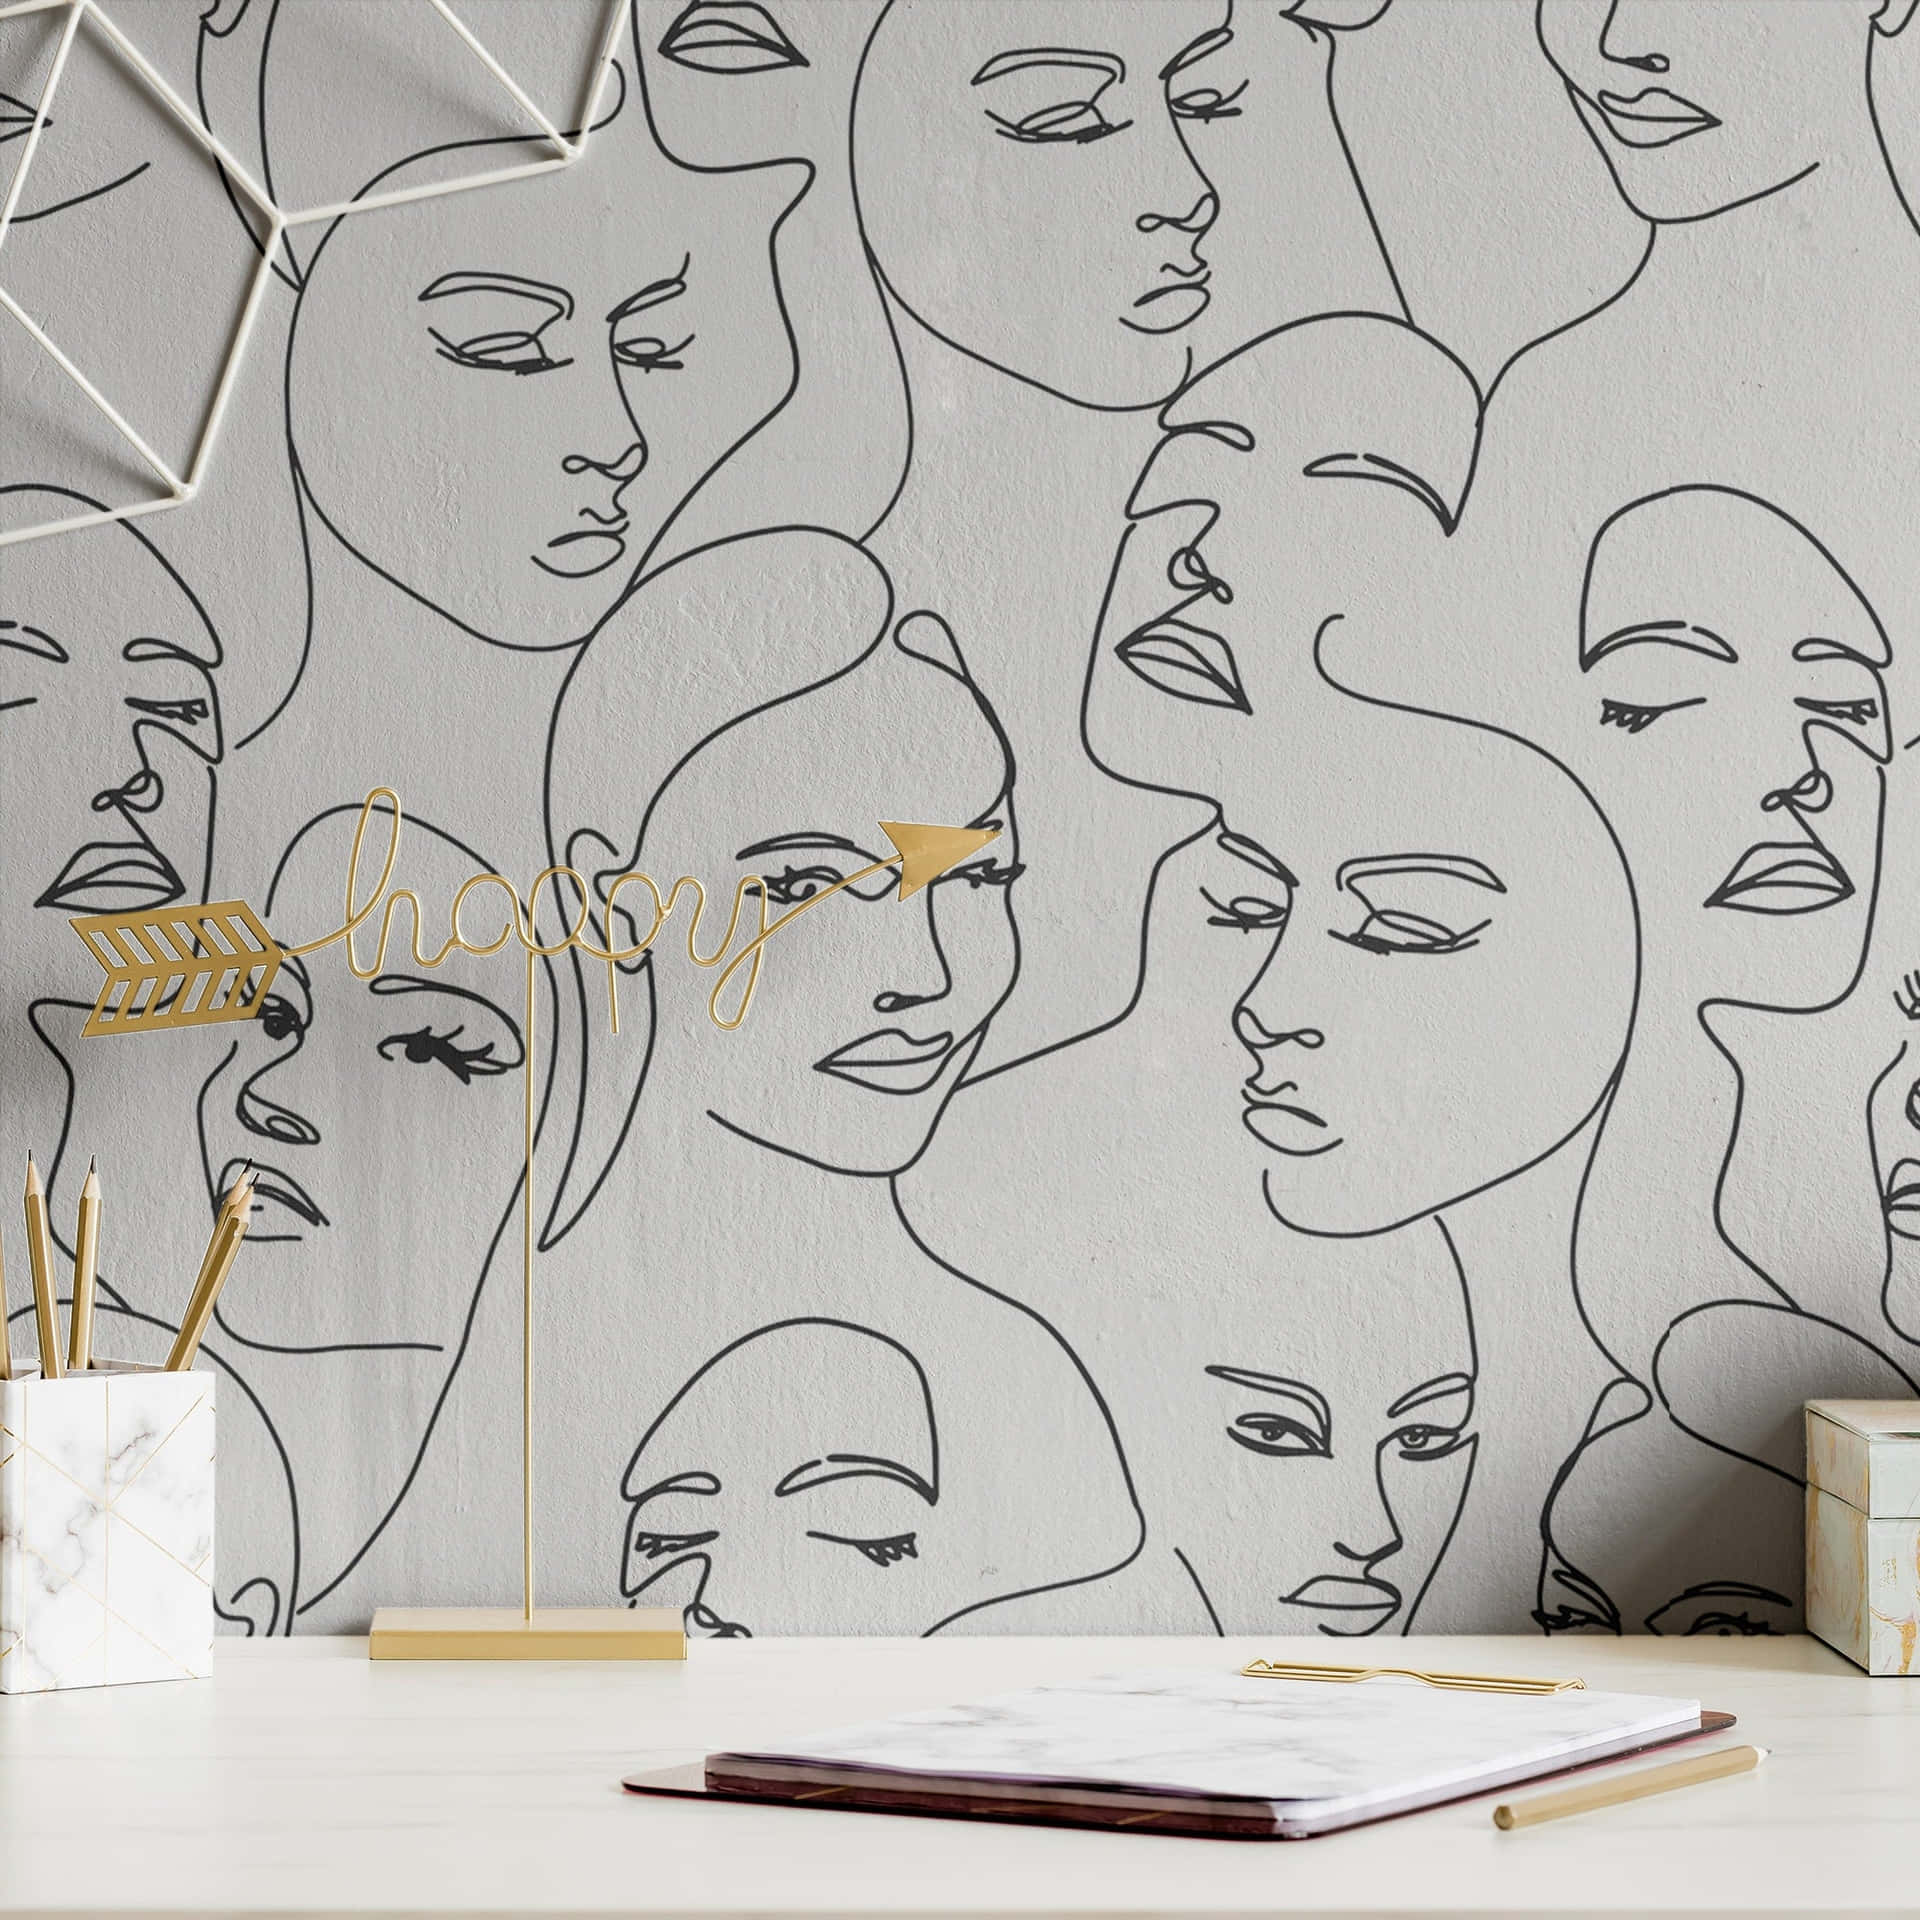 Continuous Line Faces Wallpaper Wallpaper